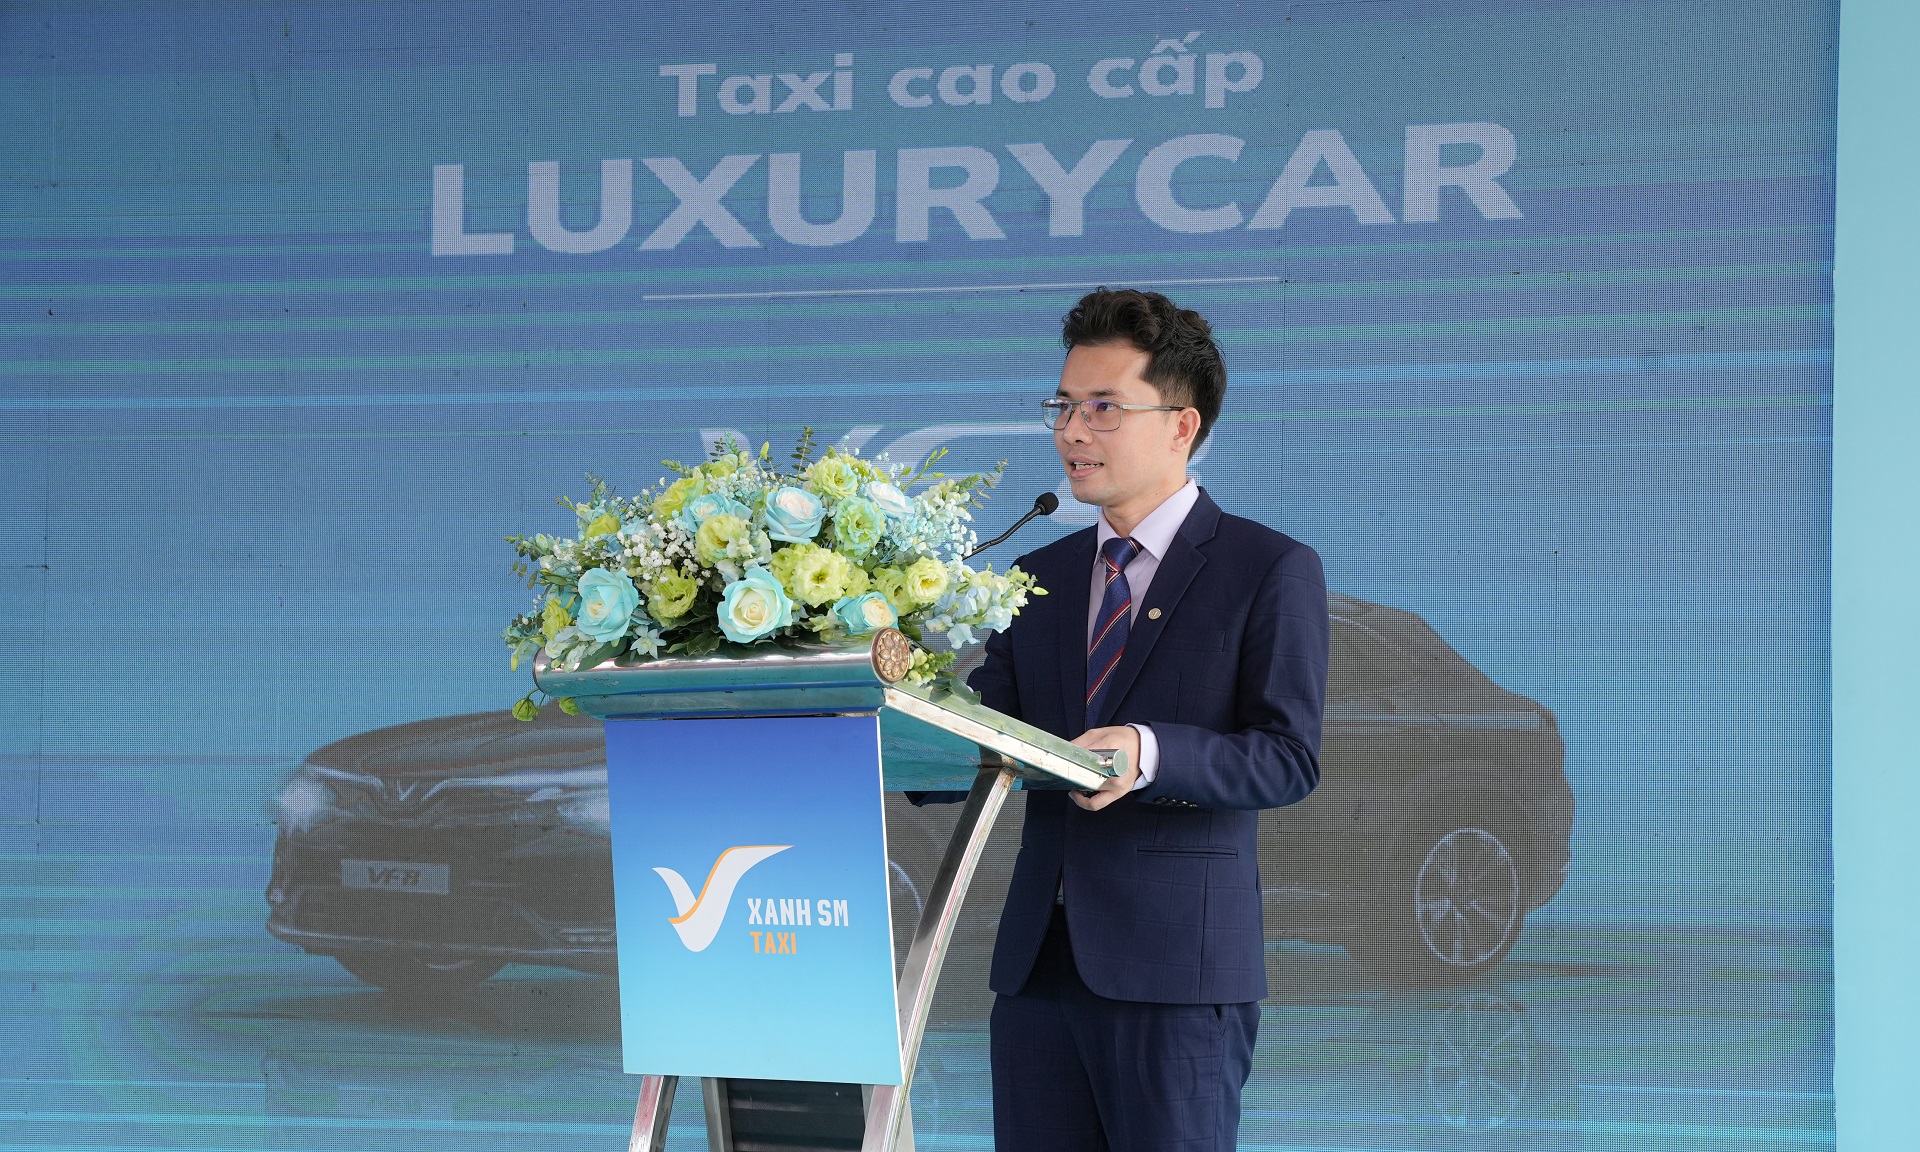 Taxi Xanh SM khai trương dịch vụ tại TP. Hồ Chí Minh, bắt đầu hoạt động từ ngày 30/4/2023